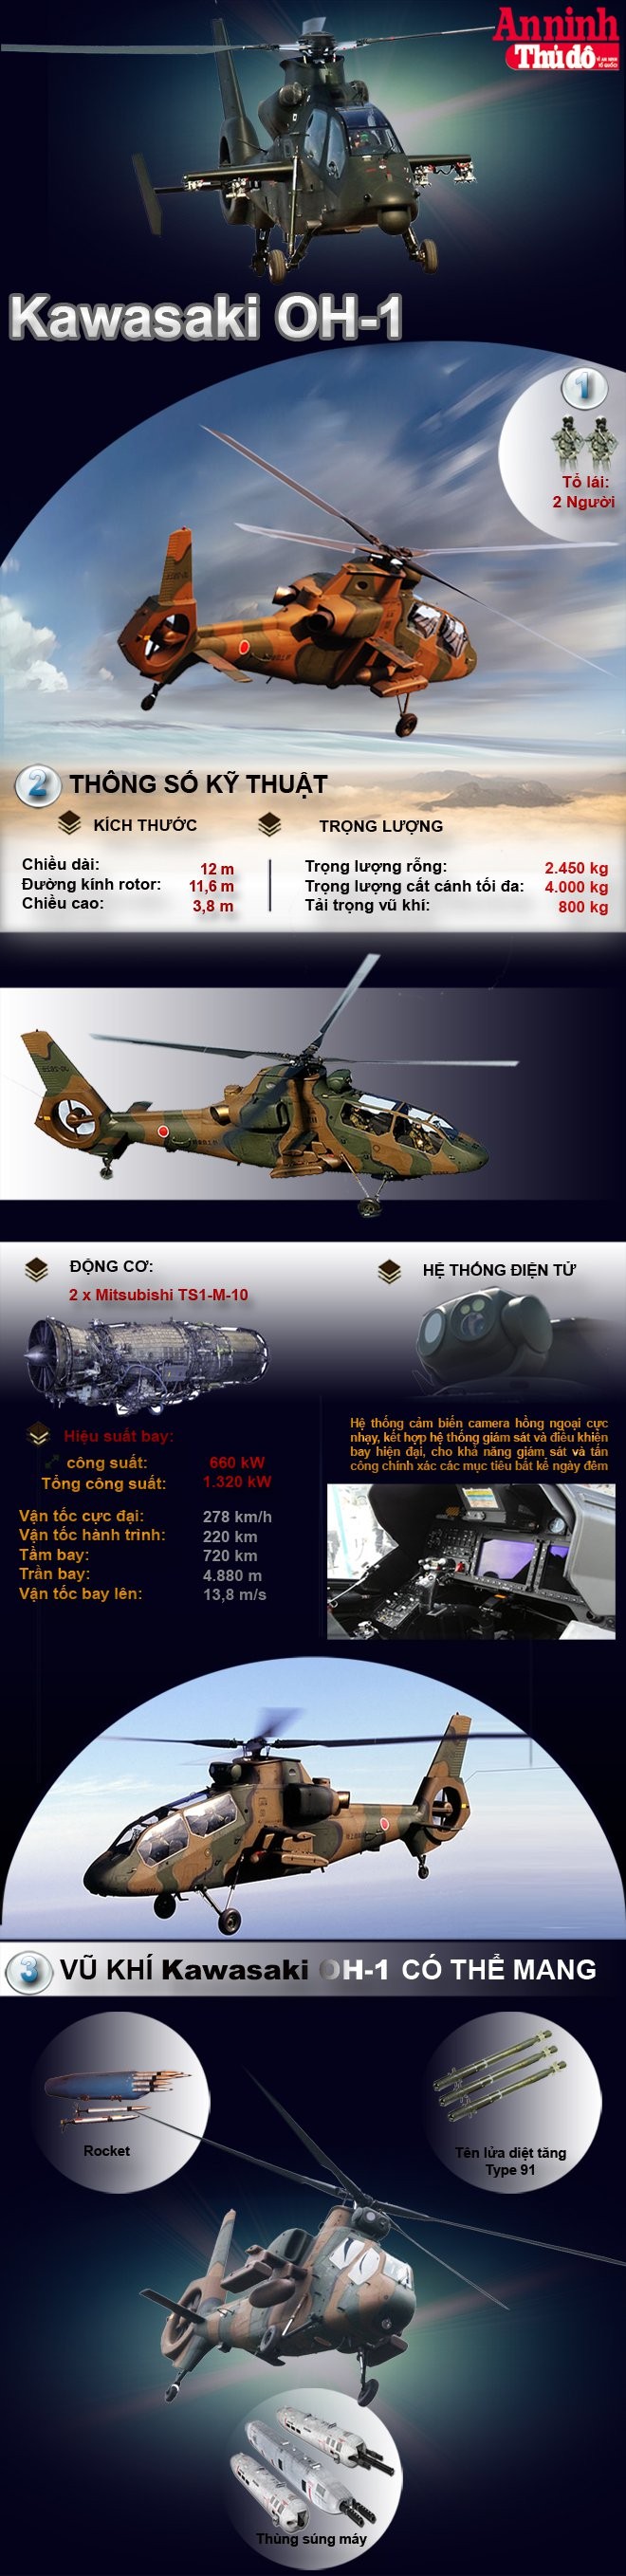 [Infographic] Kawasaki OH-1 - Trực thăng tấn công đầy uy lực của Nhật Bản